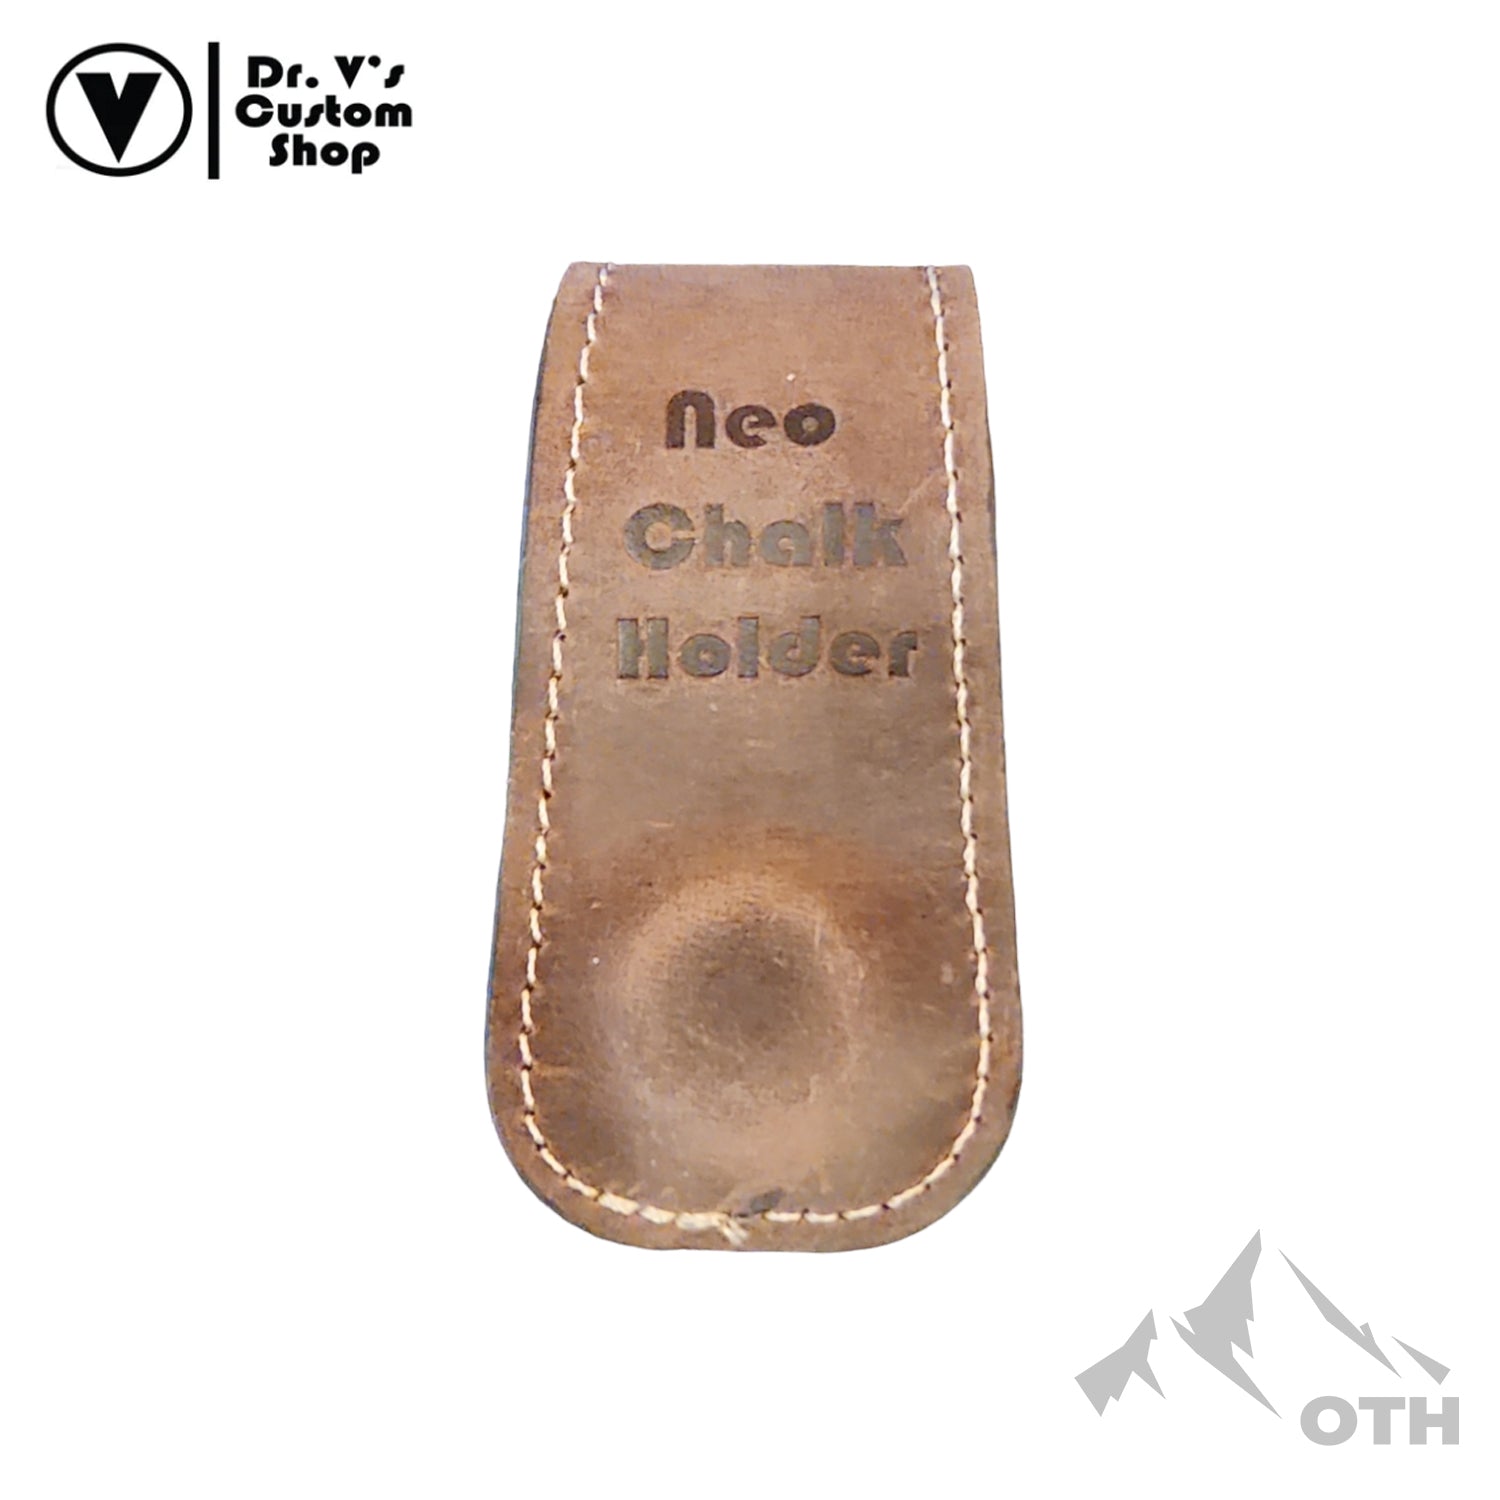 Dr. V's Chalk Holder Leather Belt Clip